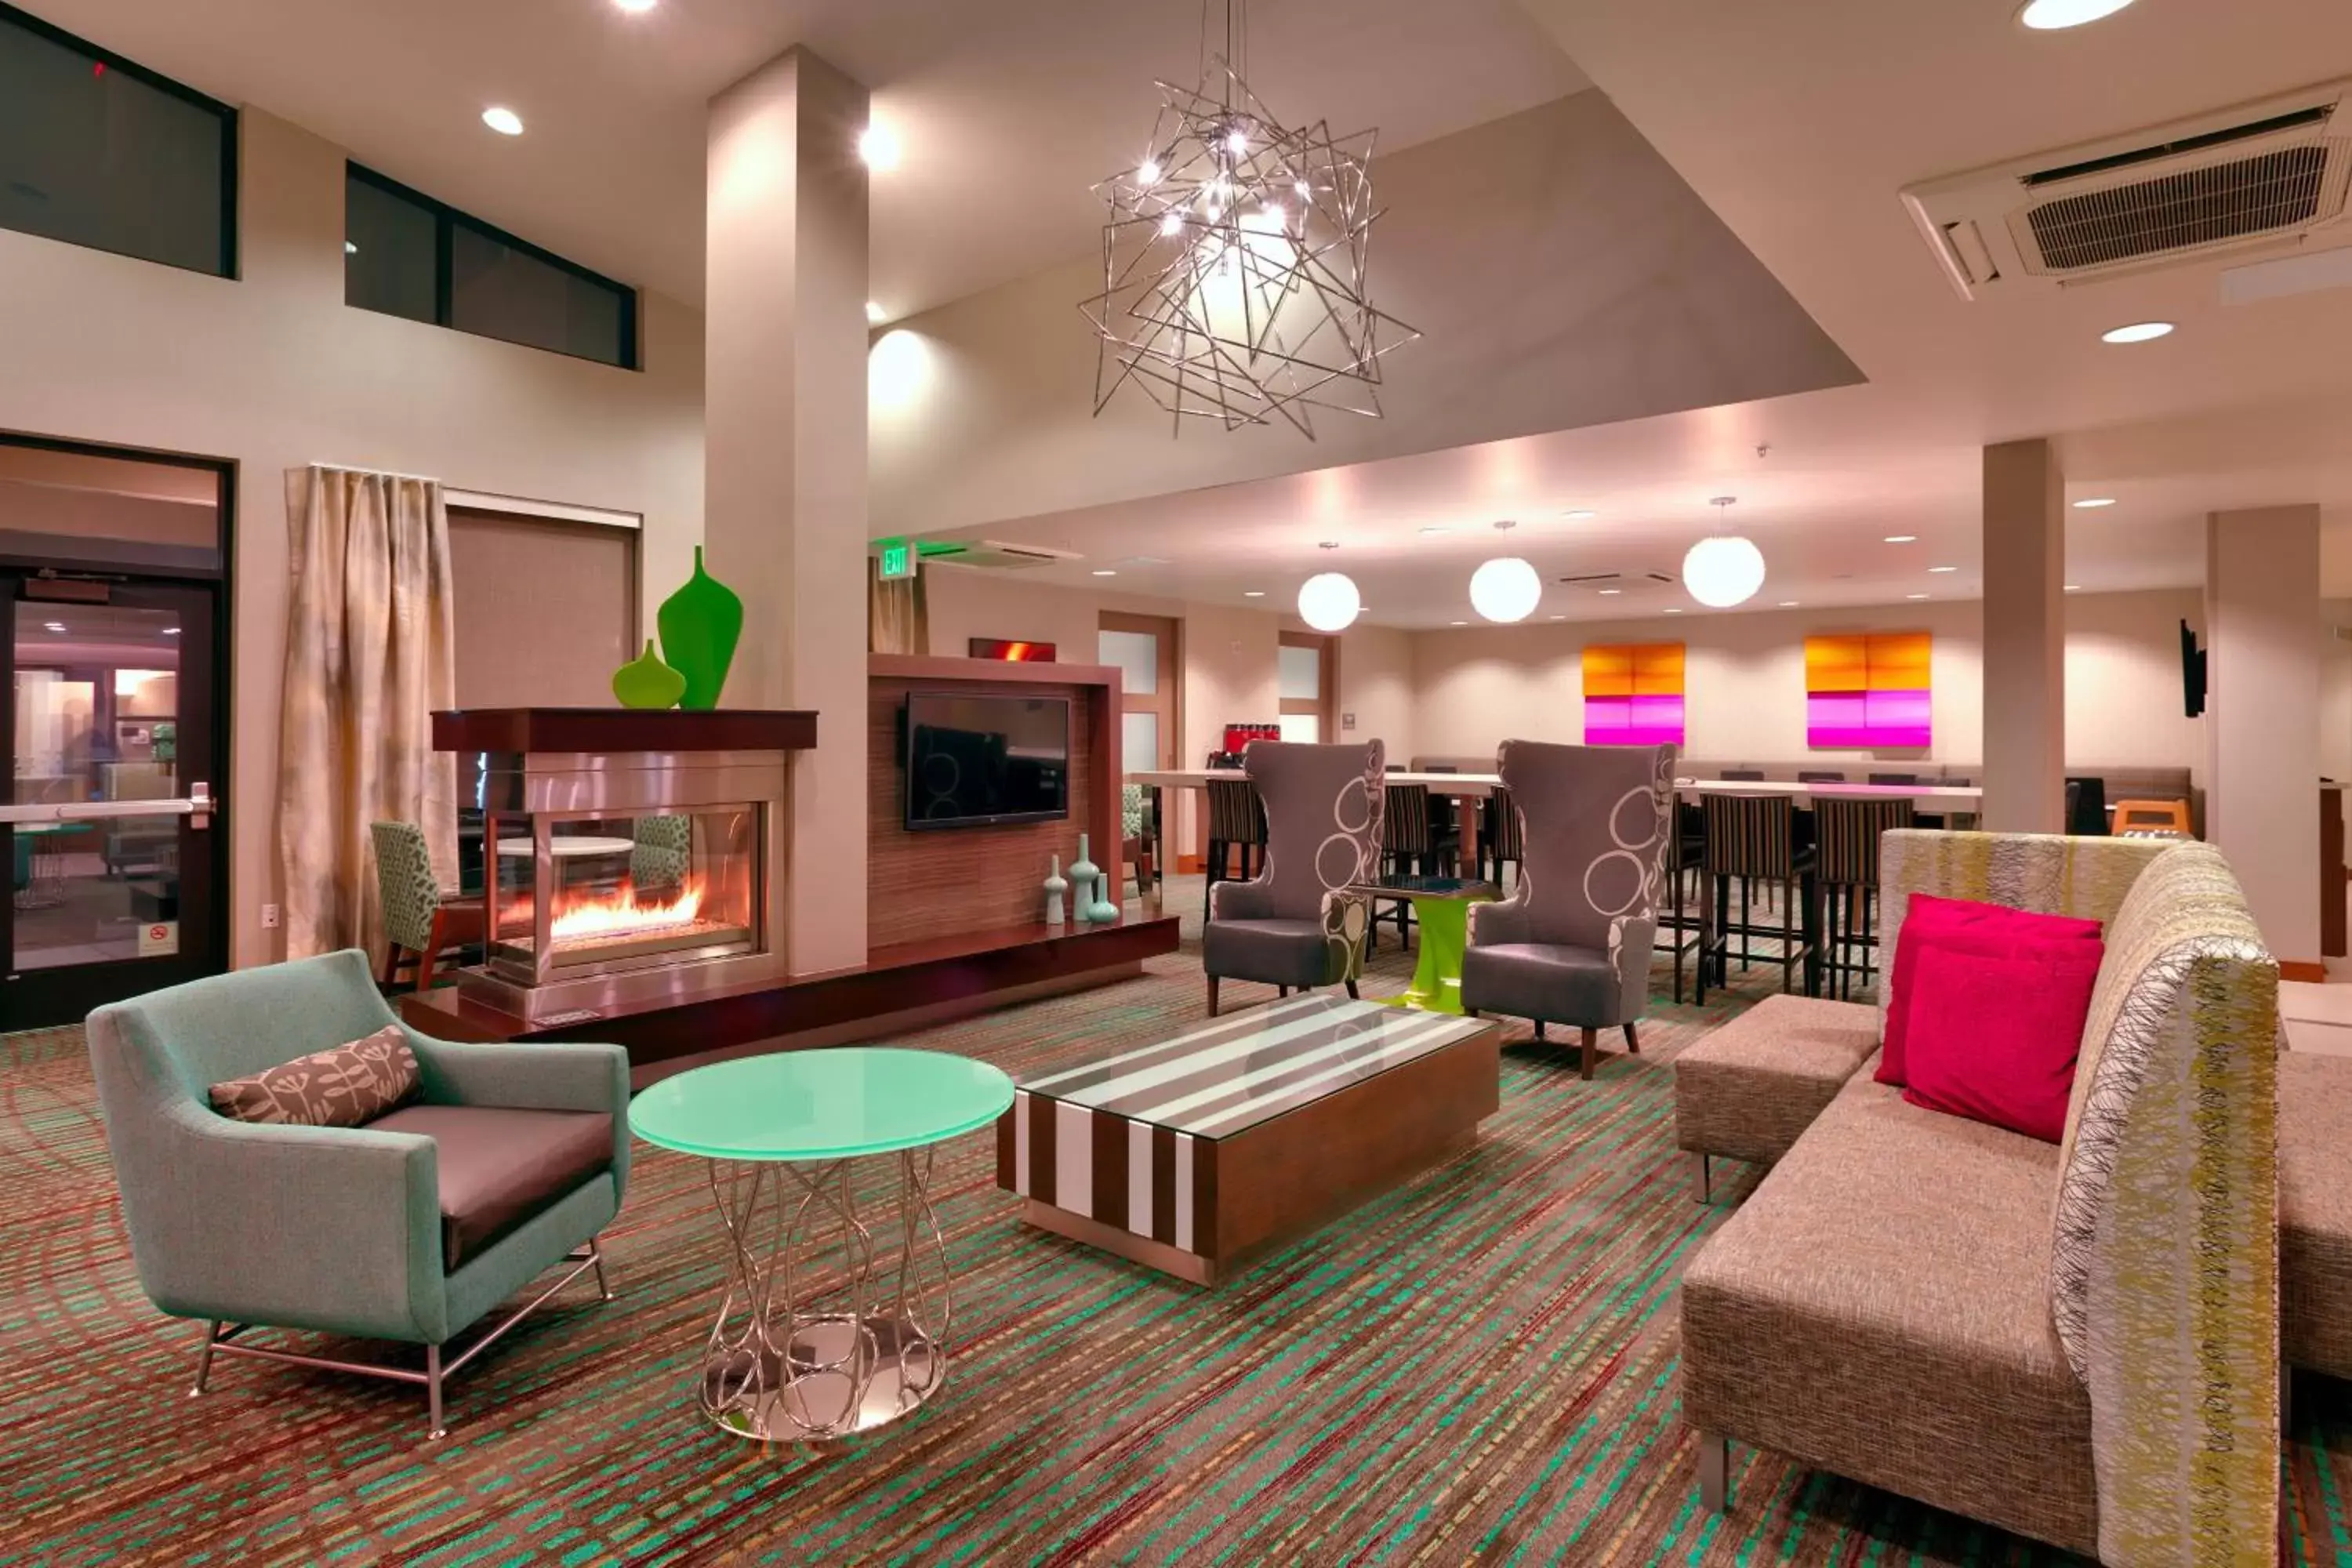 Lobby or reception, Lobby/Reception in Residence Inn Salt Lake City Murray